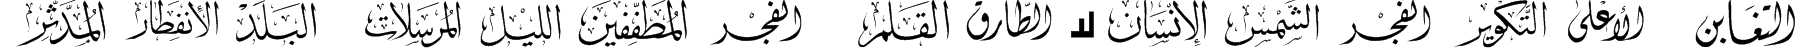 Mcs Swer Al_Quran 3 Font